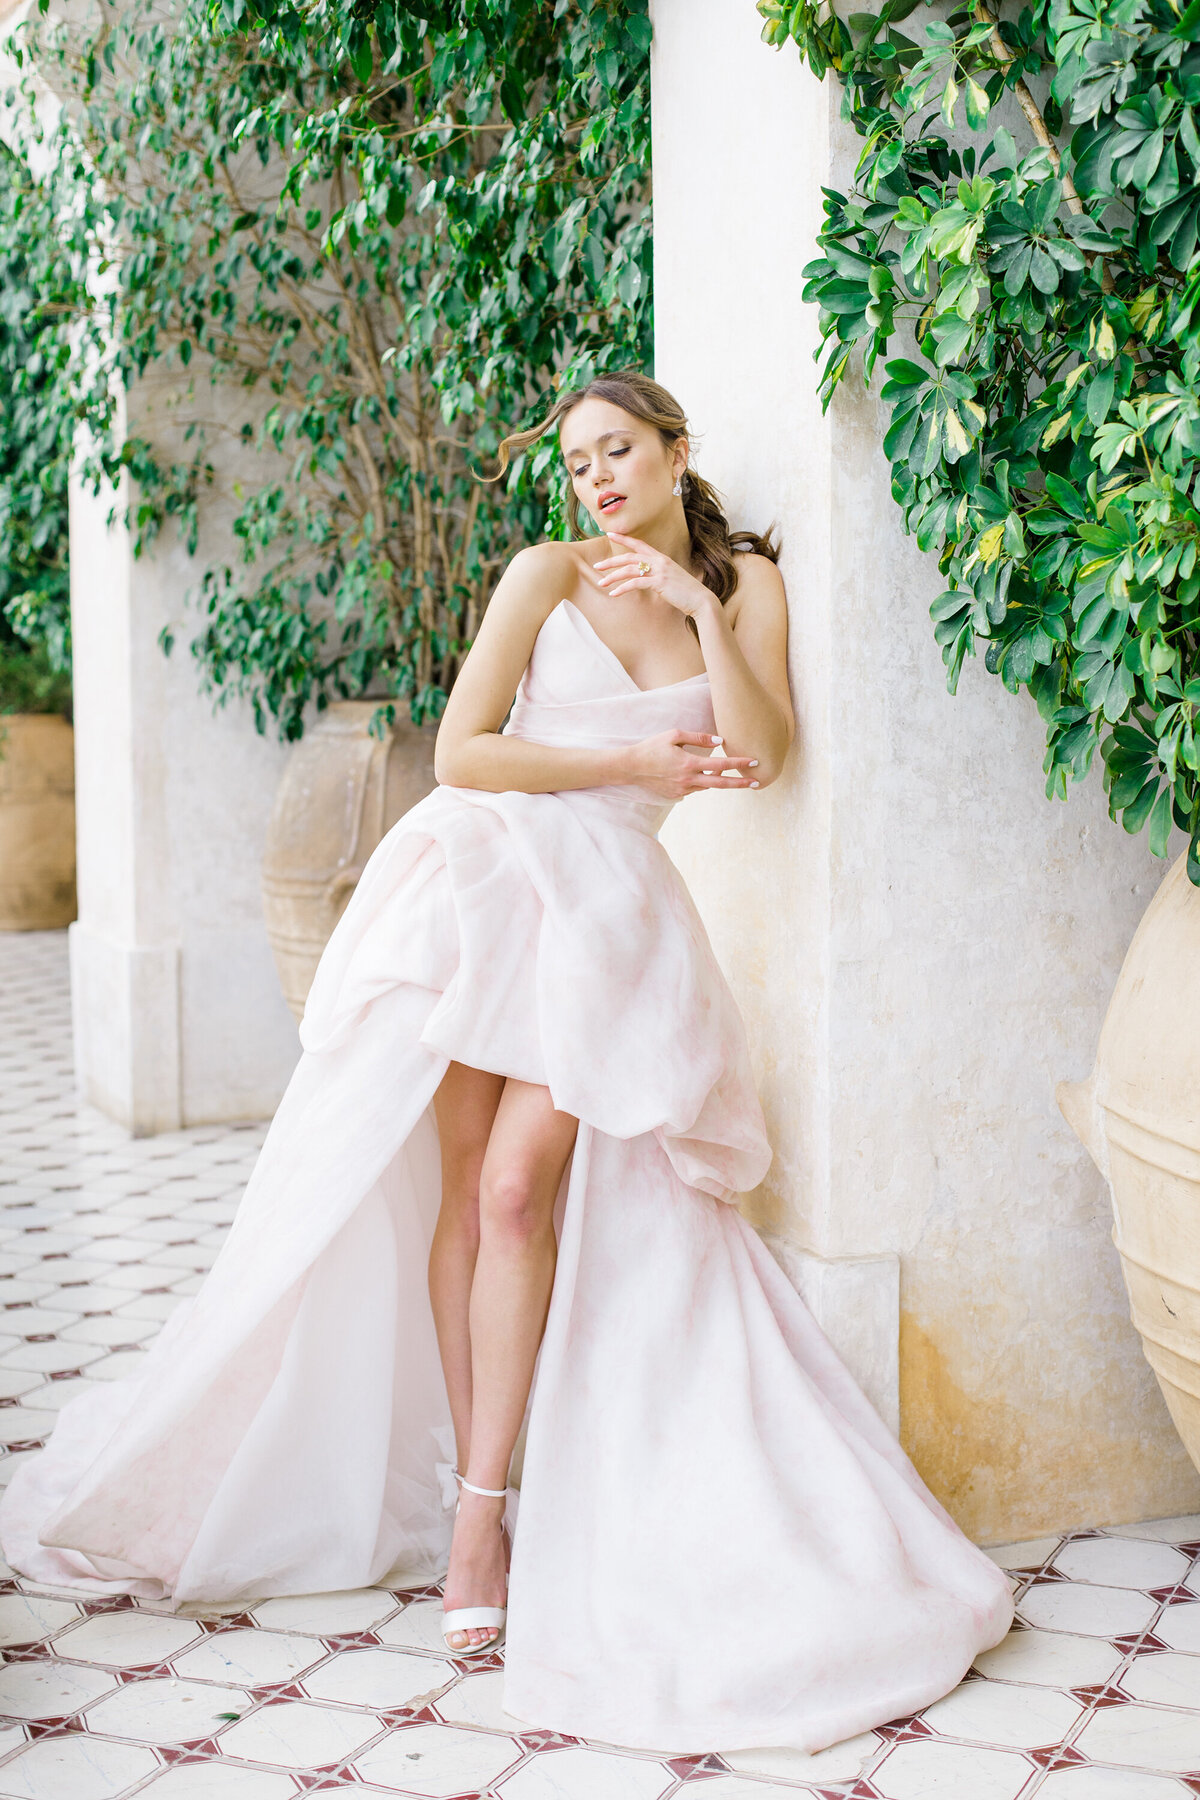 Rachael_Kazmier_Photography_Luxury_Destination_Editorial_Wedding_Photography_Positano_Amalfi-25